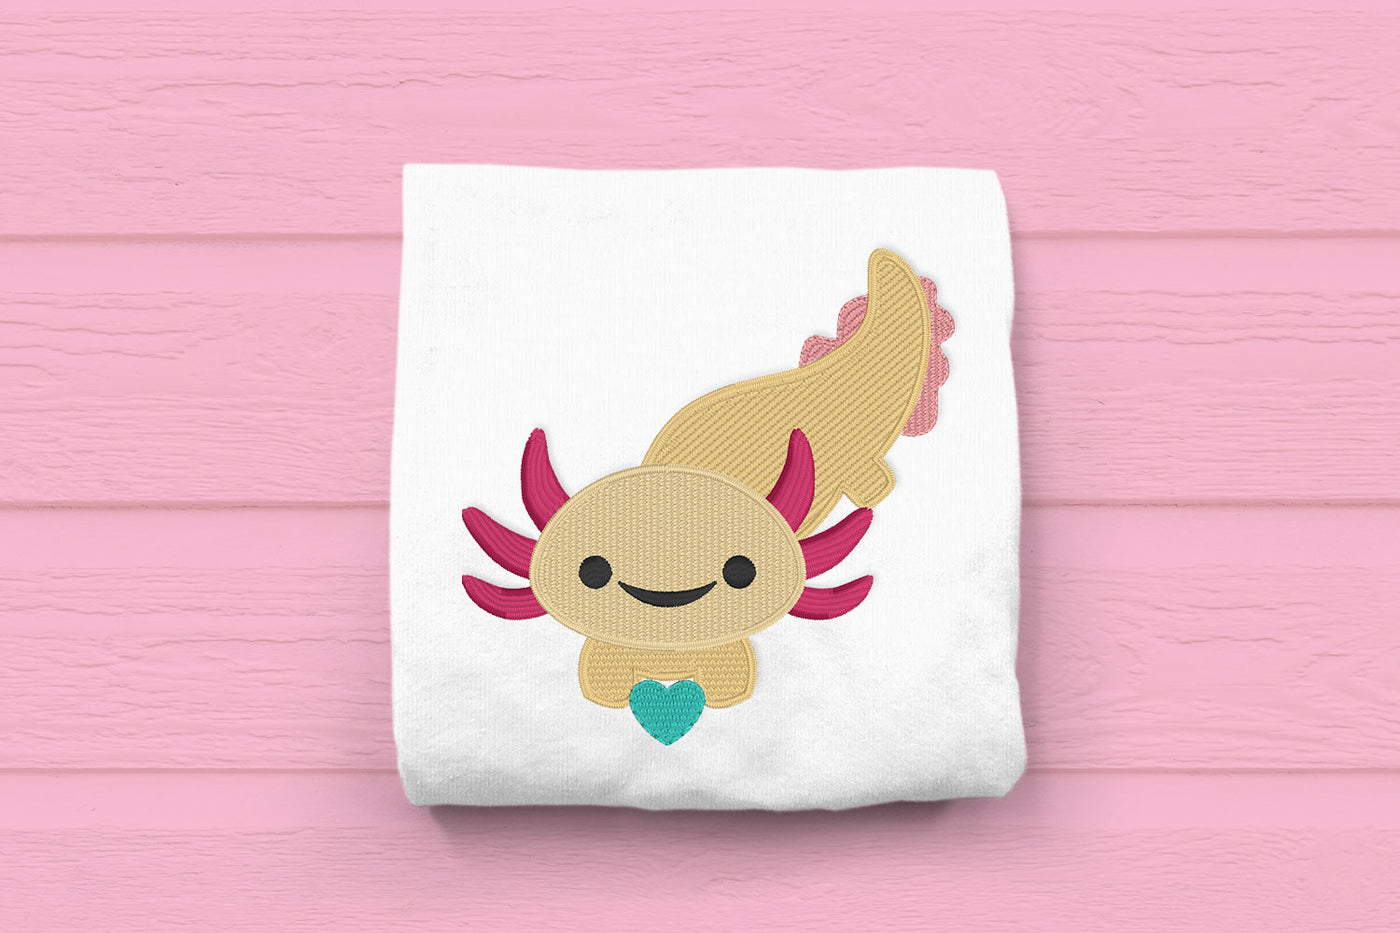 Axolotl with Heart Mini Embroidery File